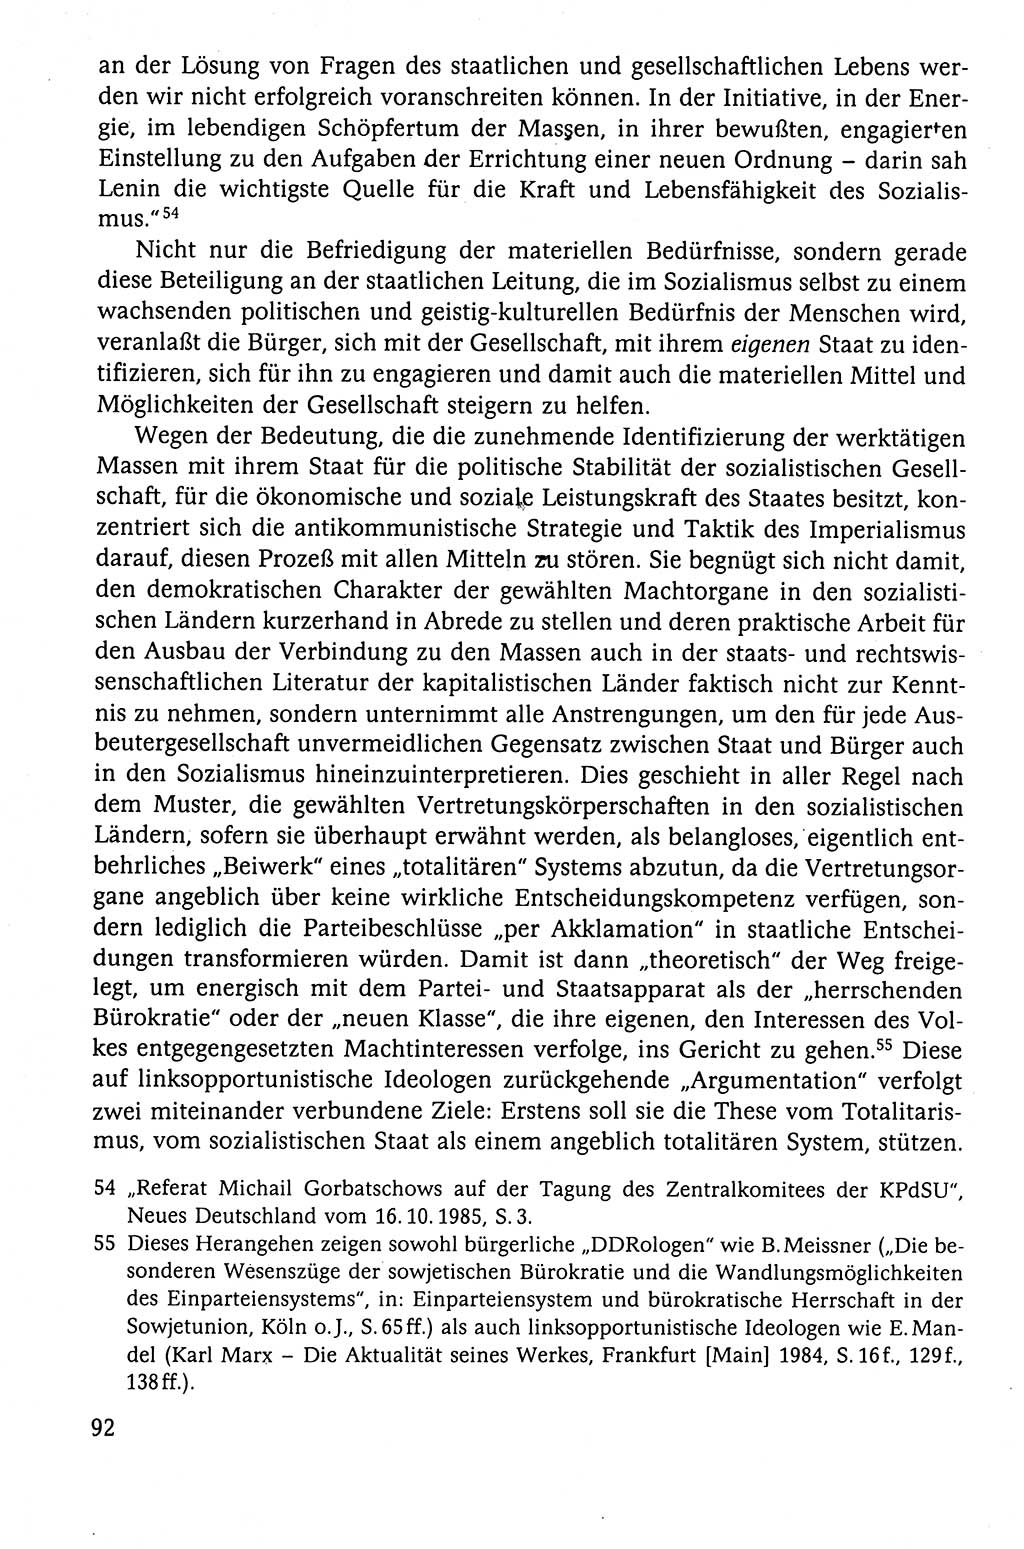 Der Staat im politischen System der DDR (Deutsche Demokratische Republik) 1986, Seite 92 (St. pol. Sys. DDR 1986, S. 92)